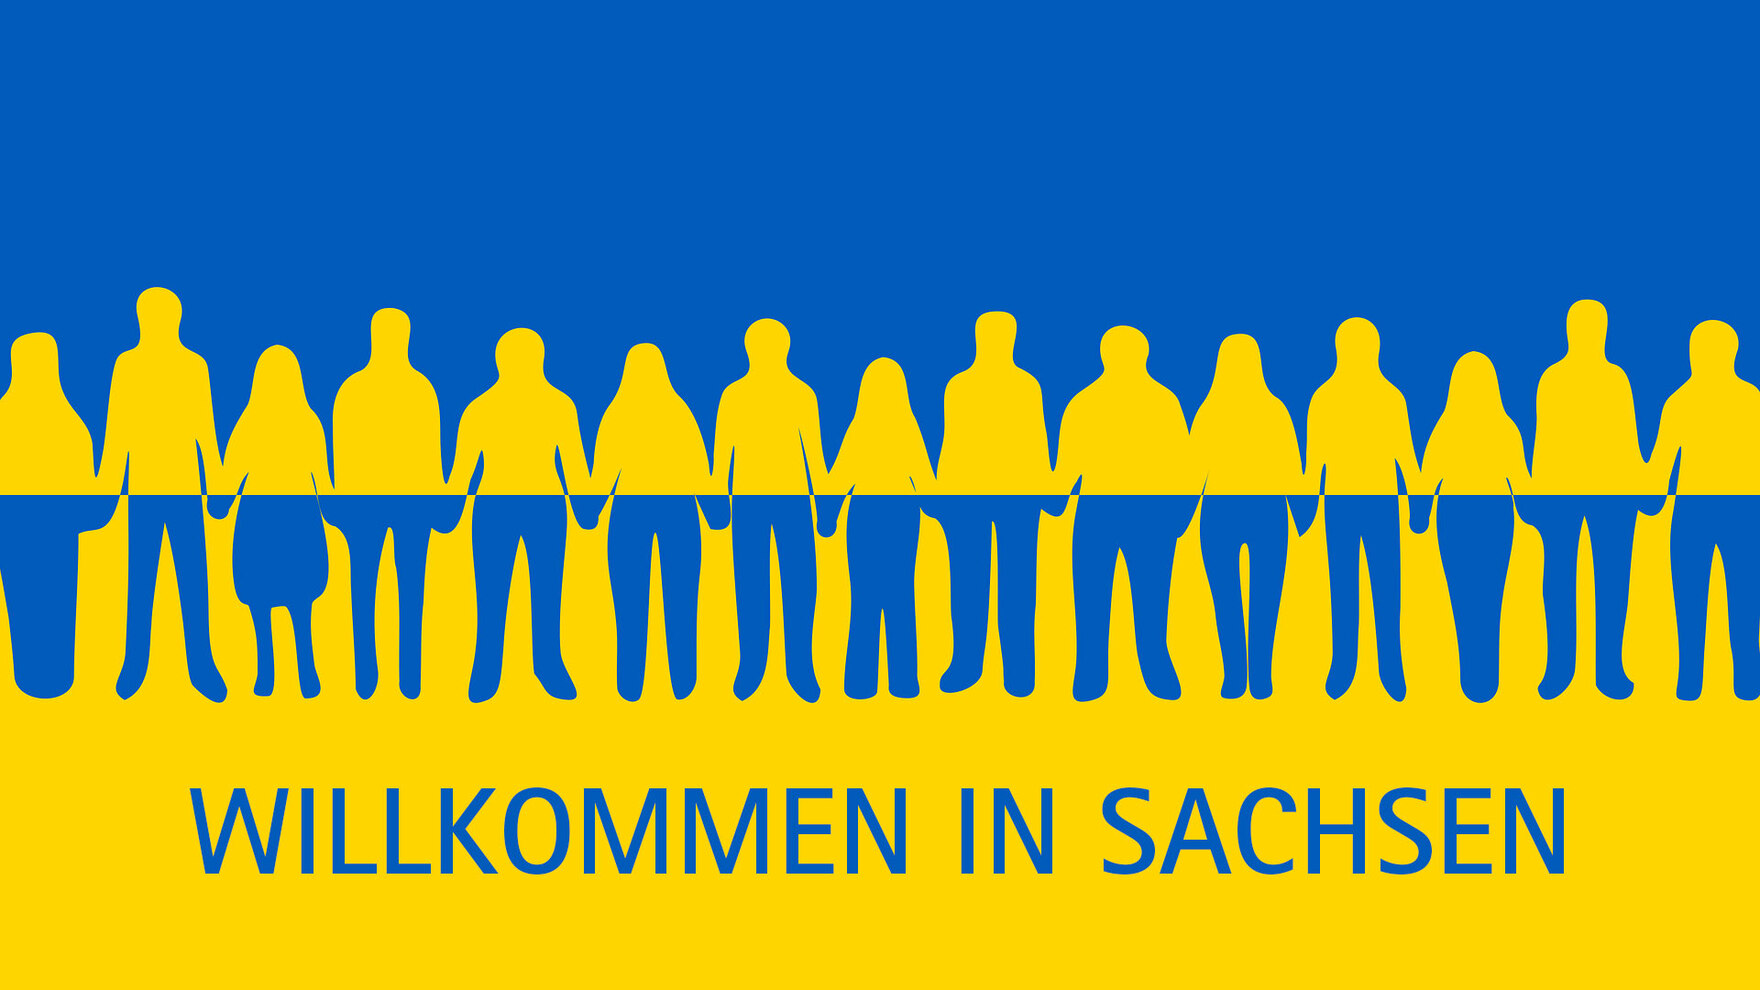 Ukrainische Flagge, davor Icons von Menschen in einer Reihe und Aufschrift "Willkommen in Sachsen"